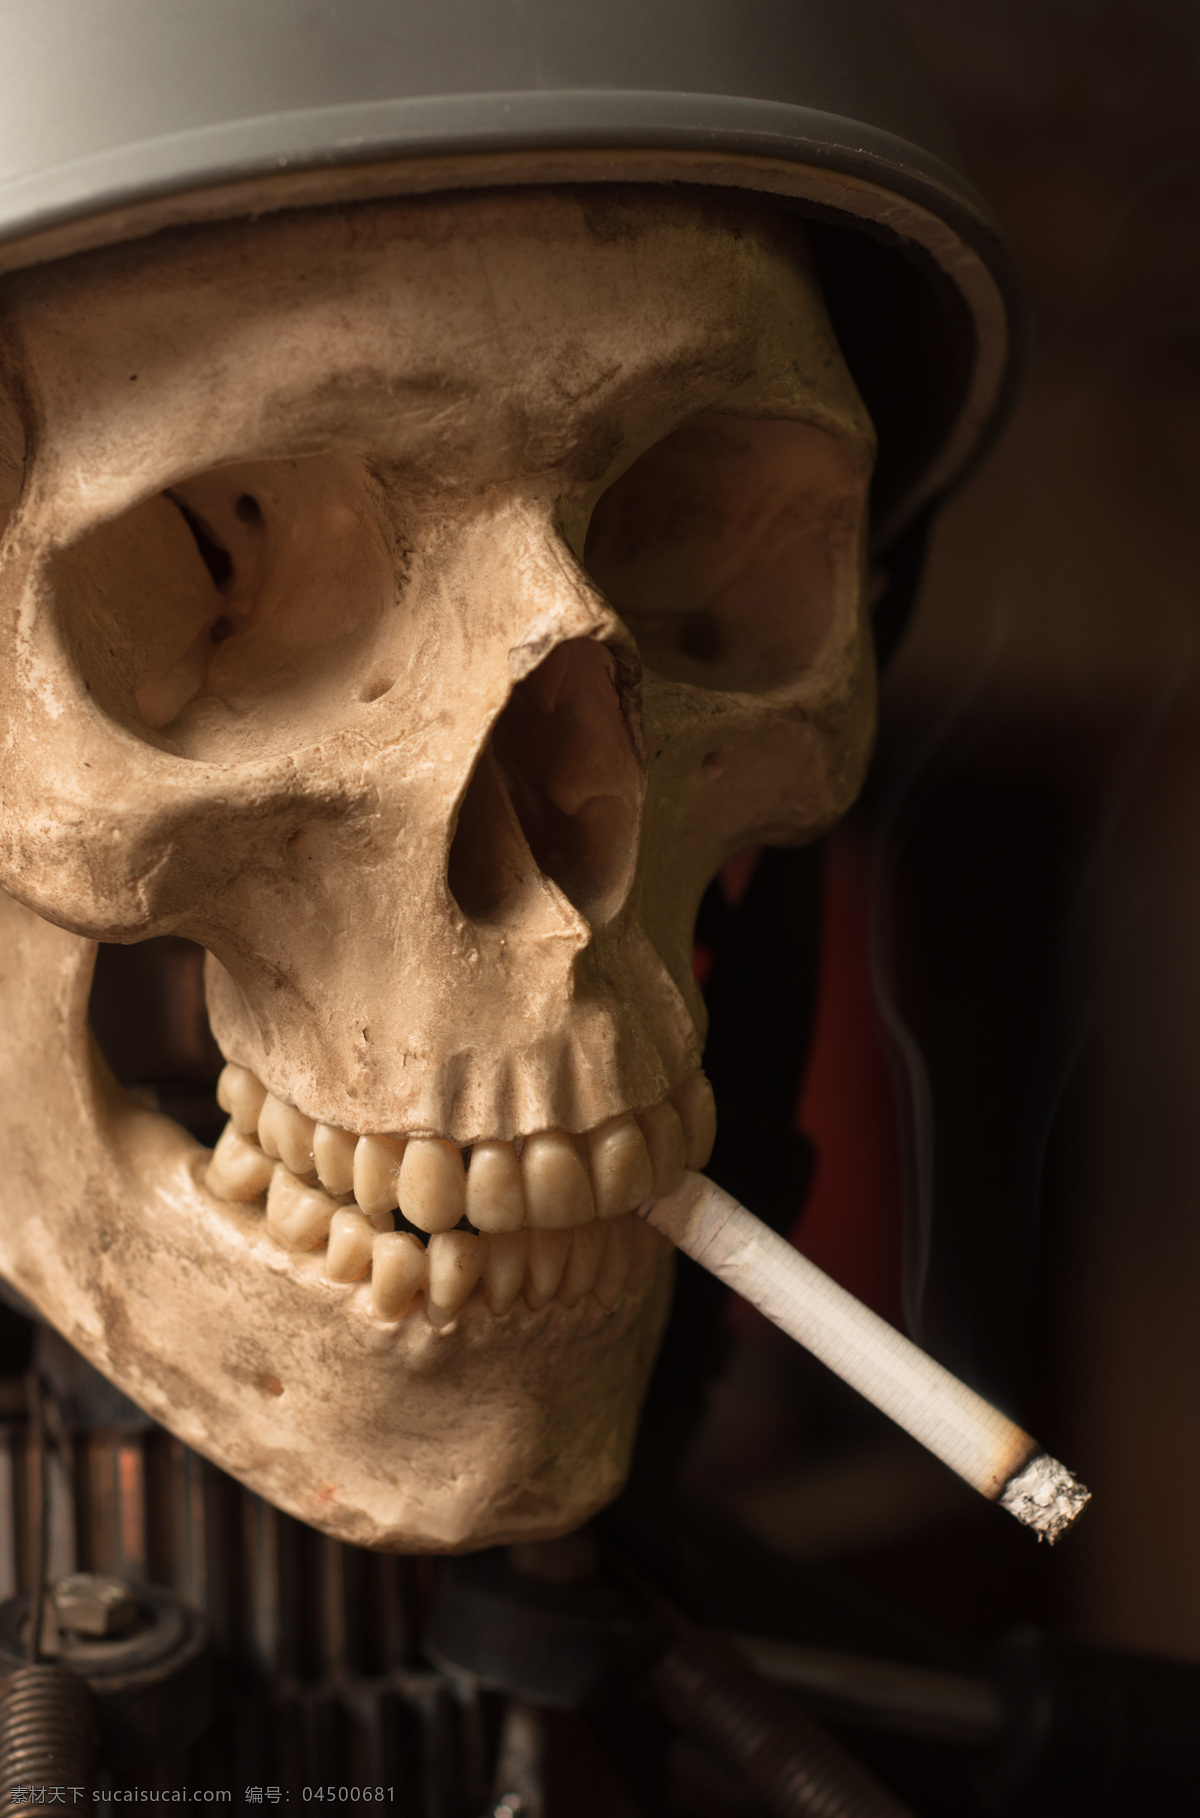 人类 头骨 人体头骨 医学 解剖 骨科 法医 人体 骷髅 正面 五官 面部 人体解剖 烟头 医疗护理 现代科技 其他人物 人物图片